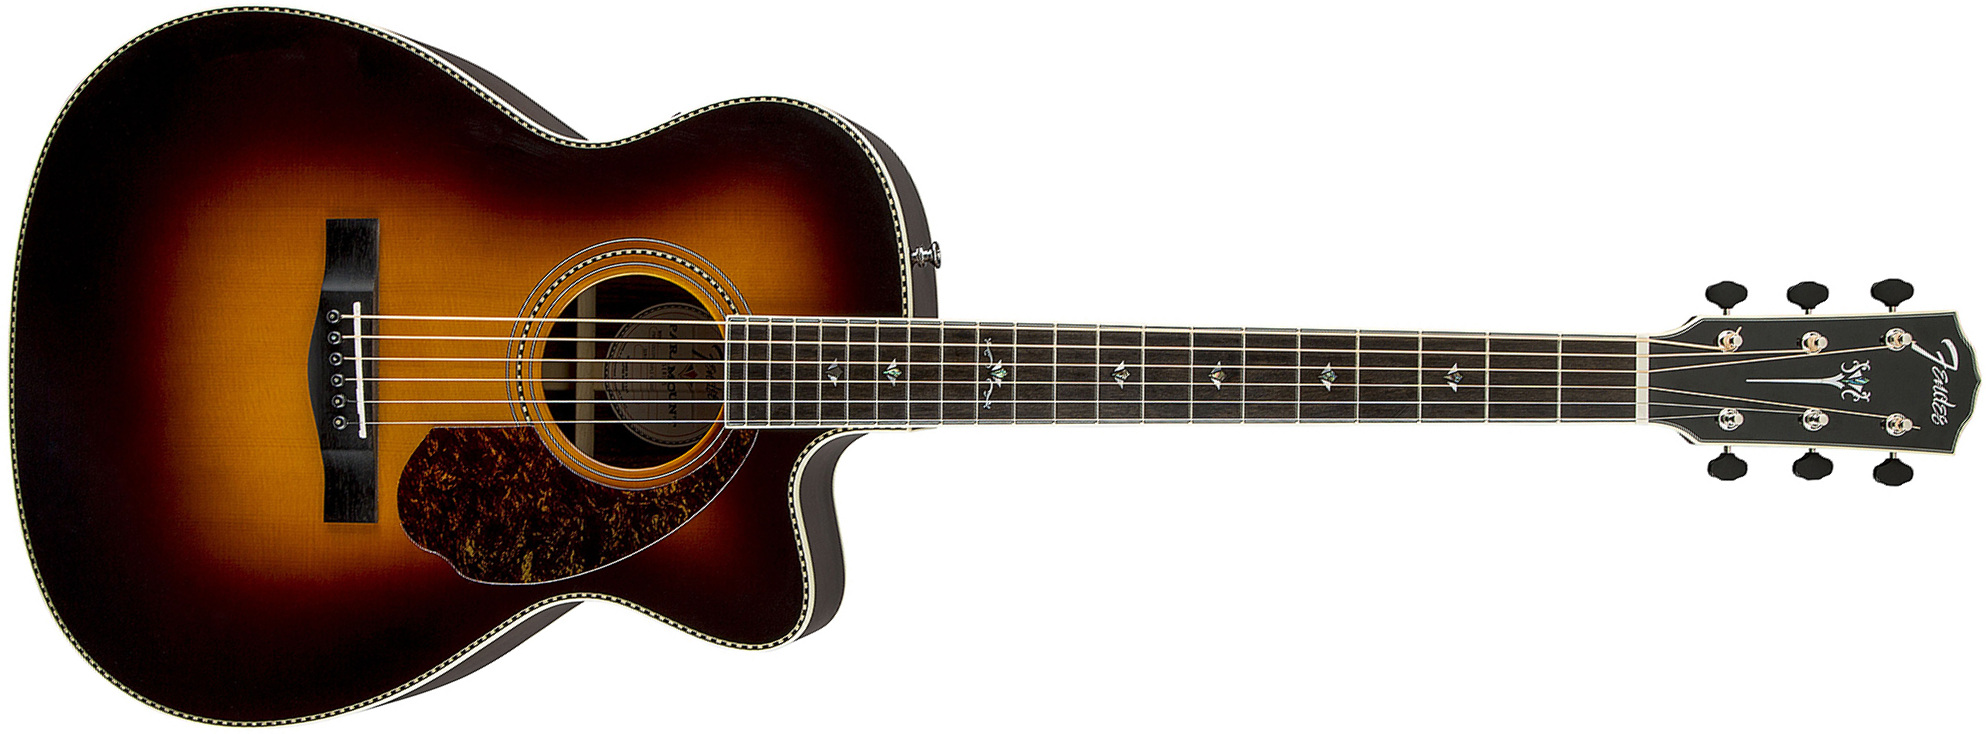 Fender Pm-3 Deluxe Paramount Triple 0 - Vintage Sunburst - Acoustic guitar & electro - Main picture